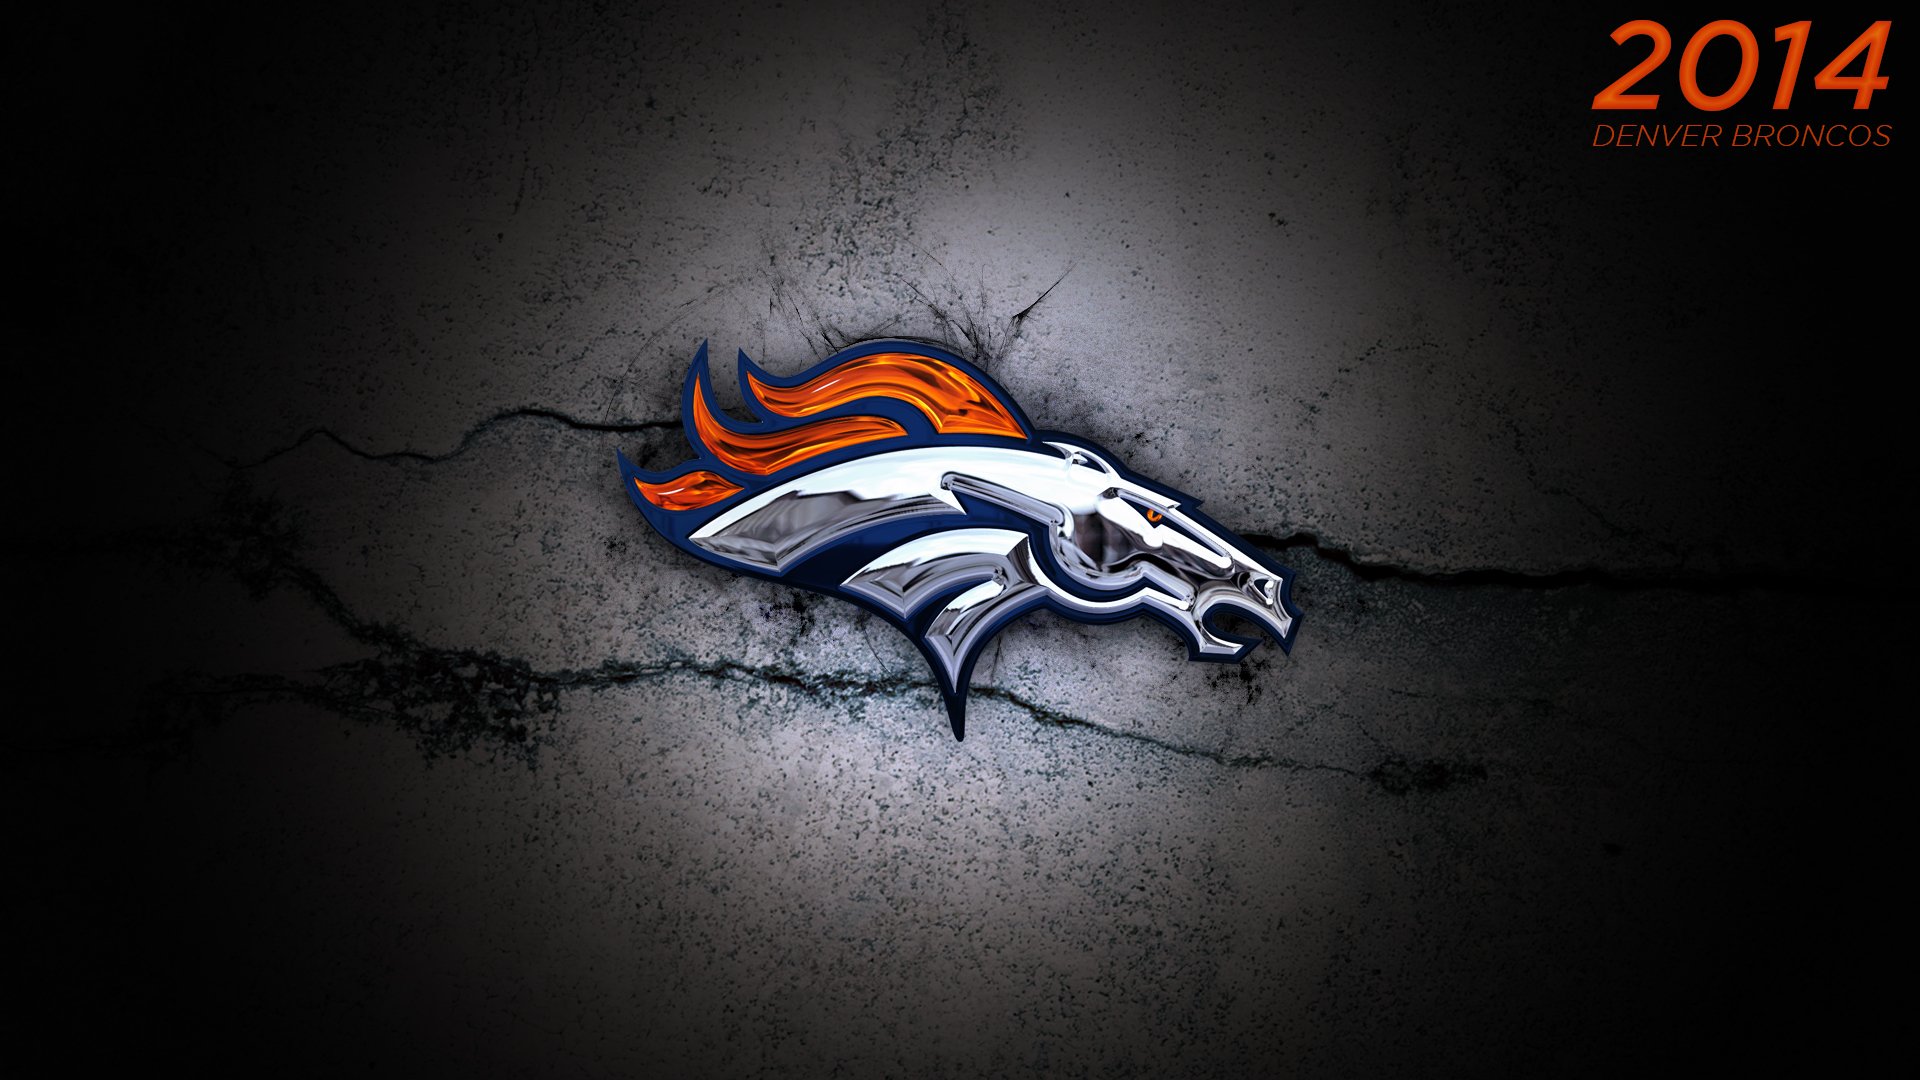 2014 Denver Broncos Wallpaper by DenverSportsWalls on 1920x1080